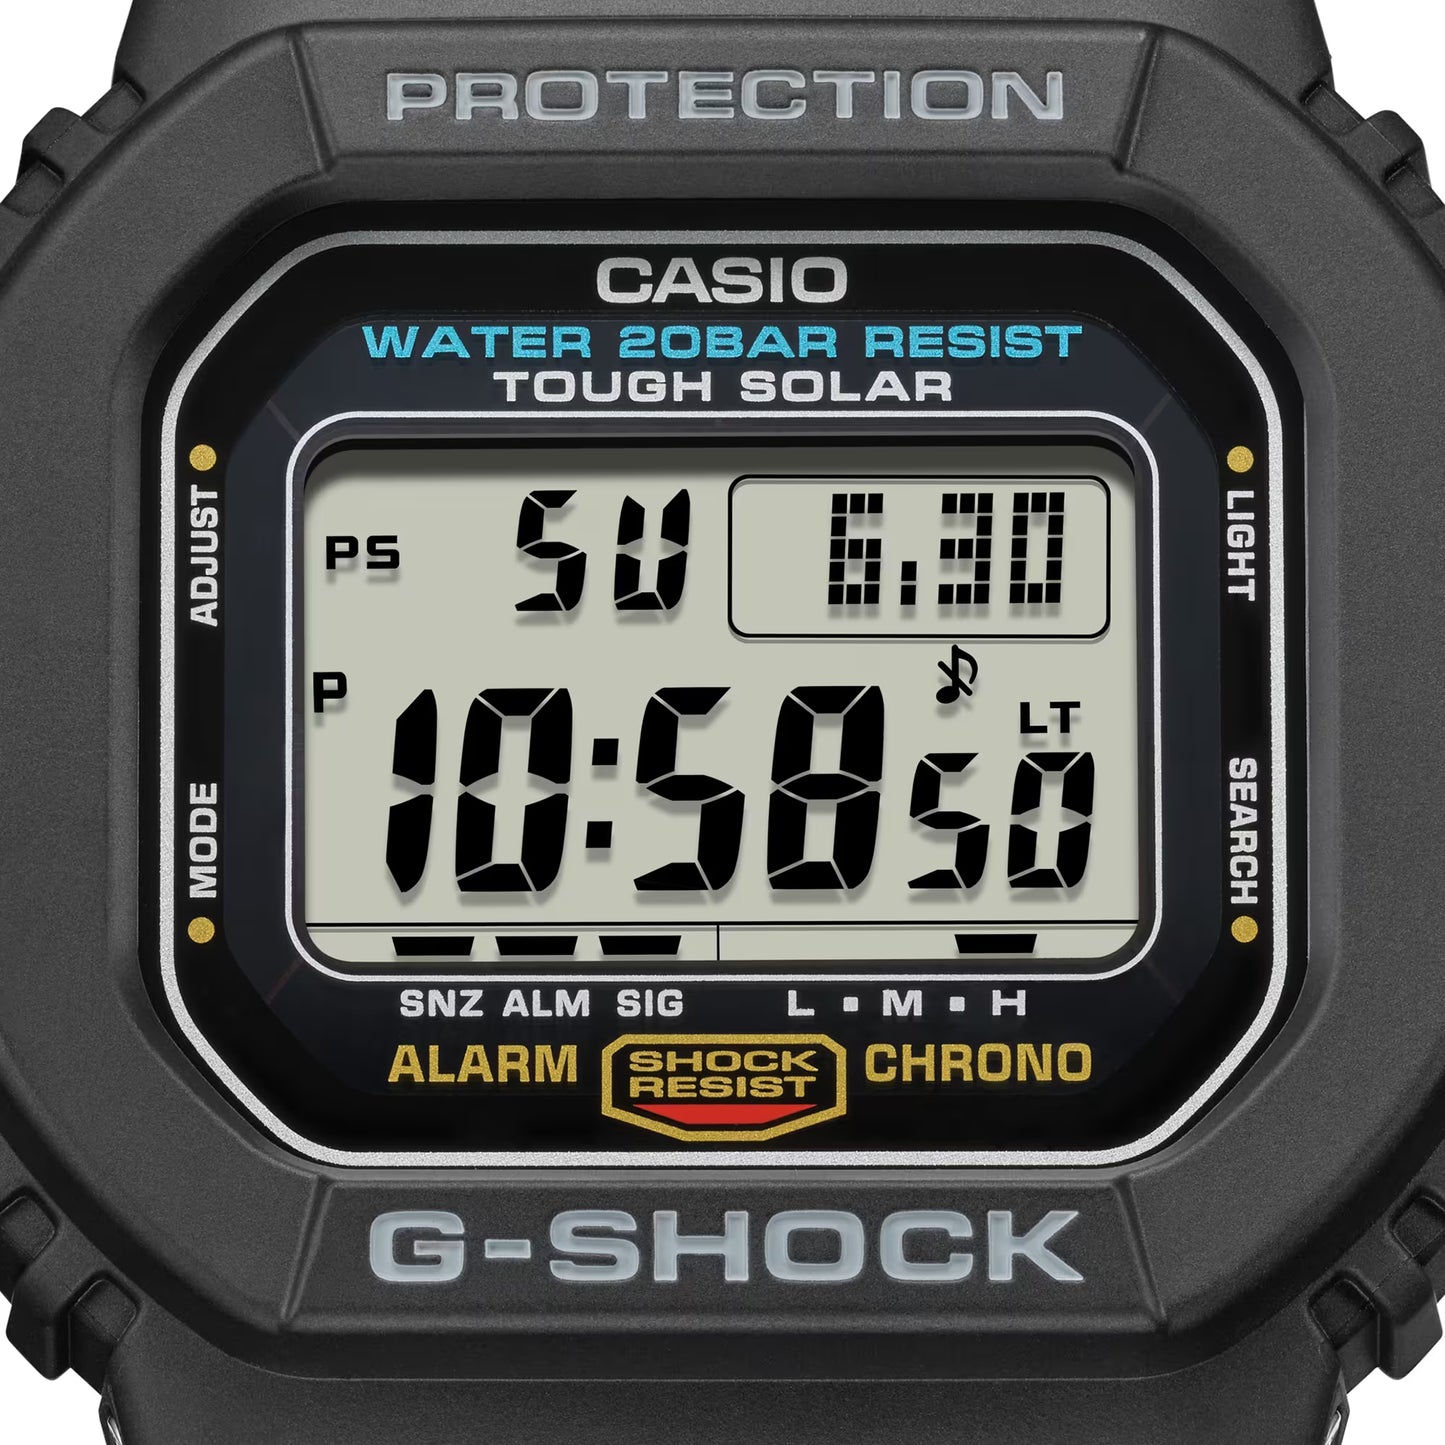 CASIO G-SHOCK G-5600UE-1 SOLAR DIGITAL WATCH